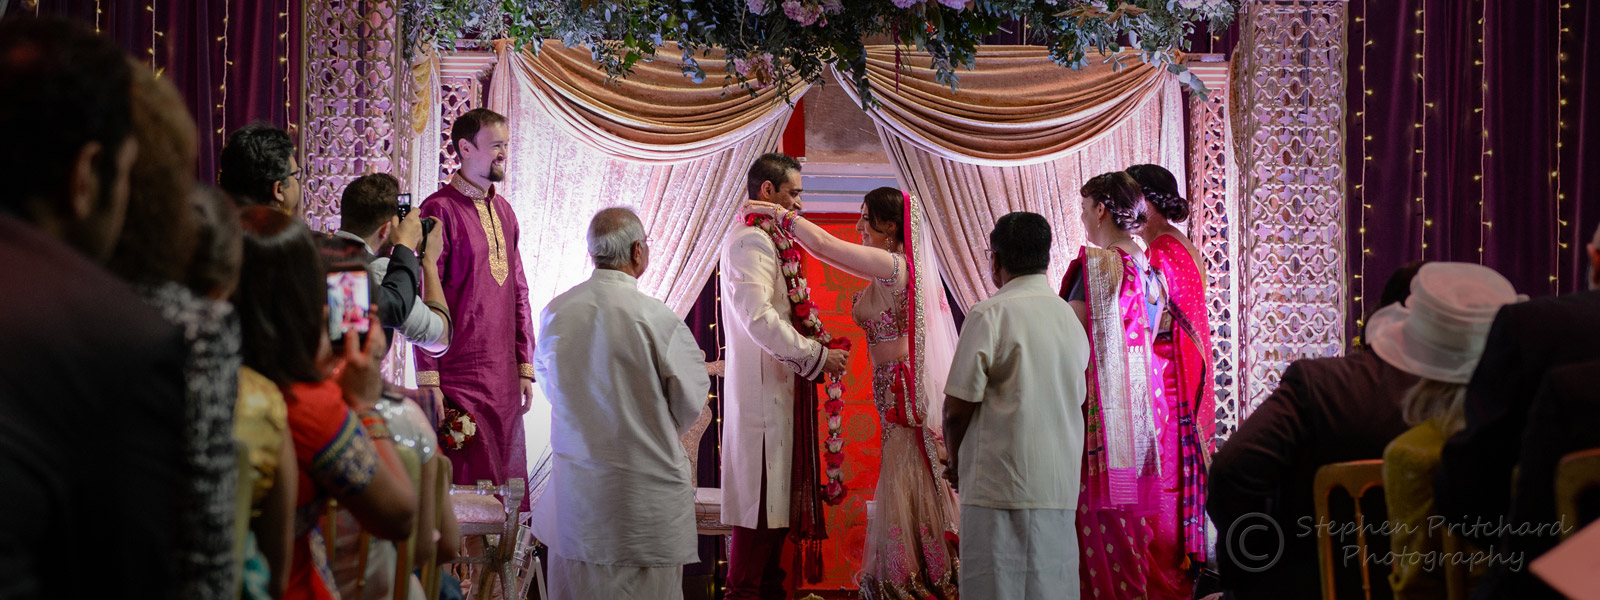 20150509_ND48210_indian-wedding_w1600